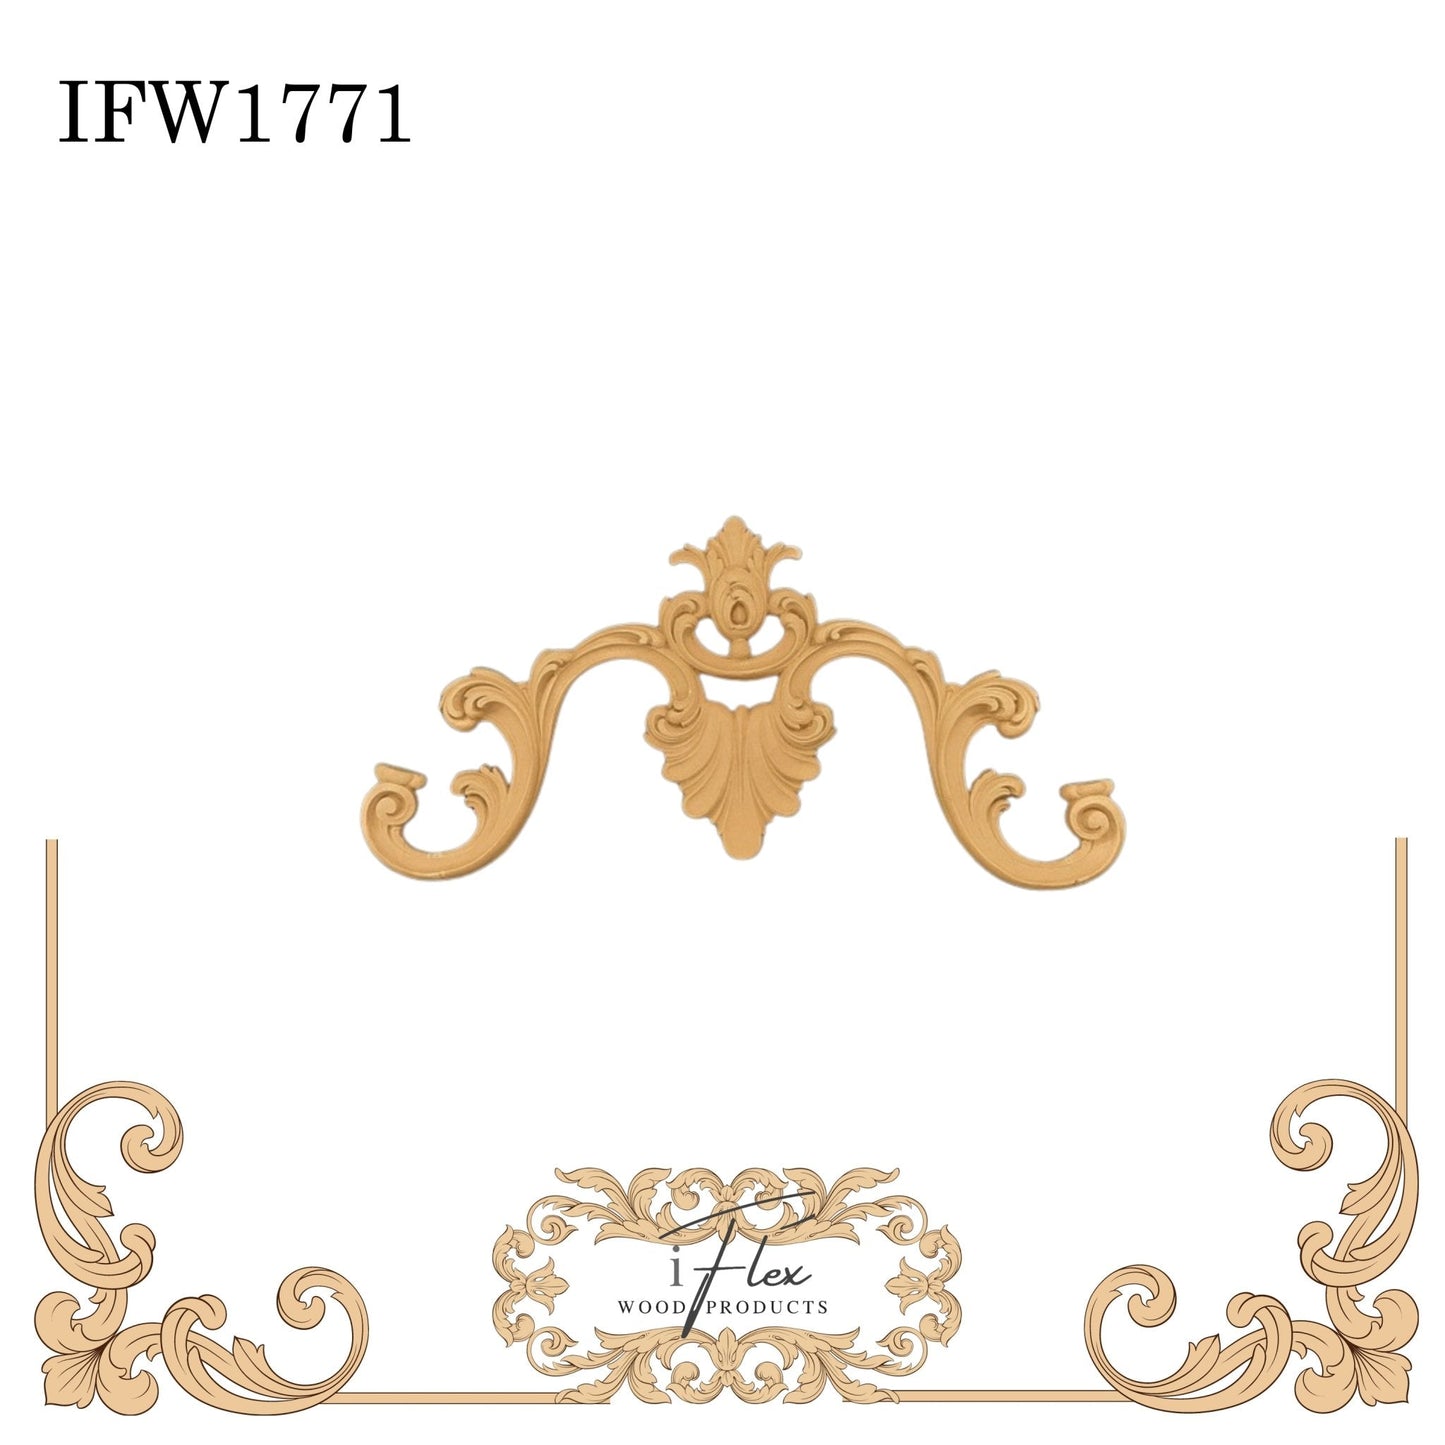 IFW 1771